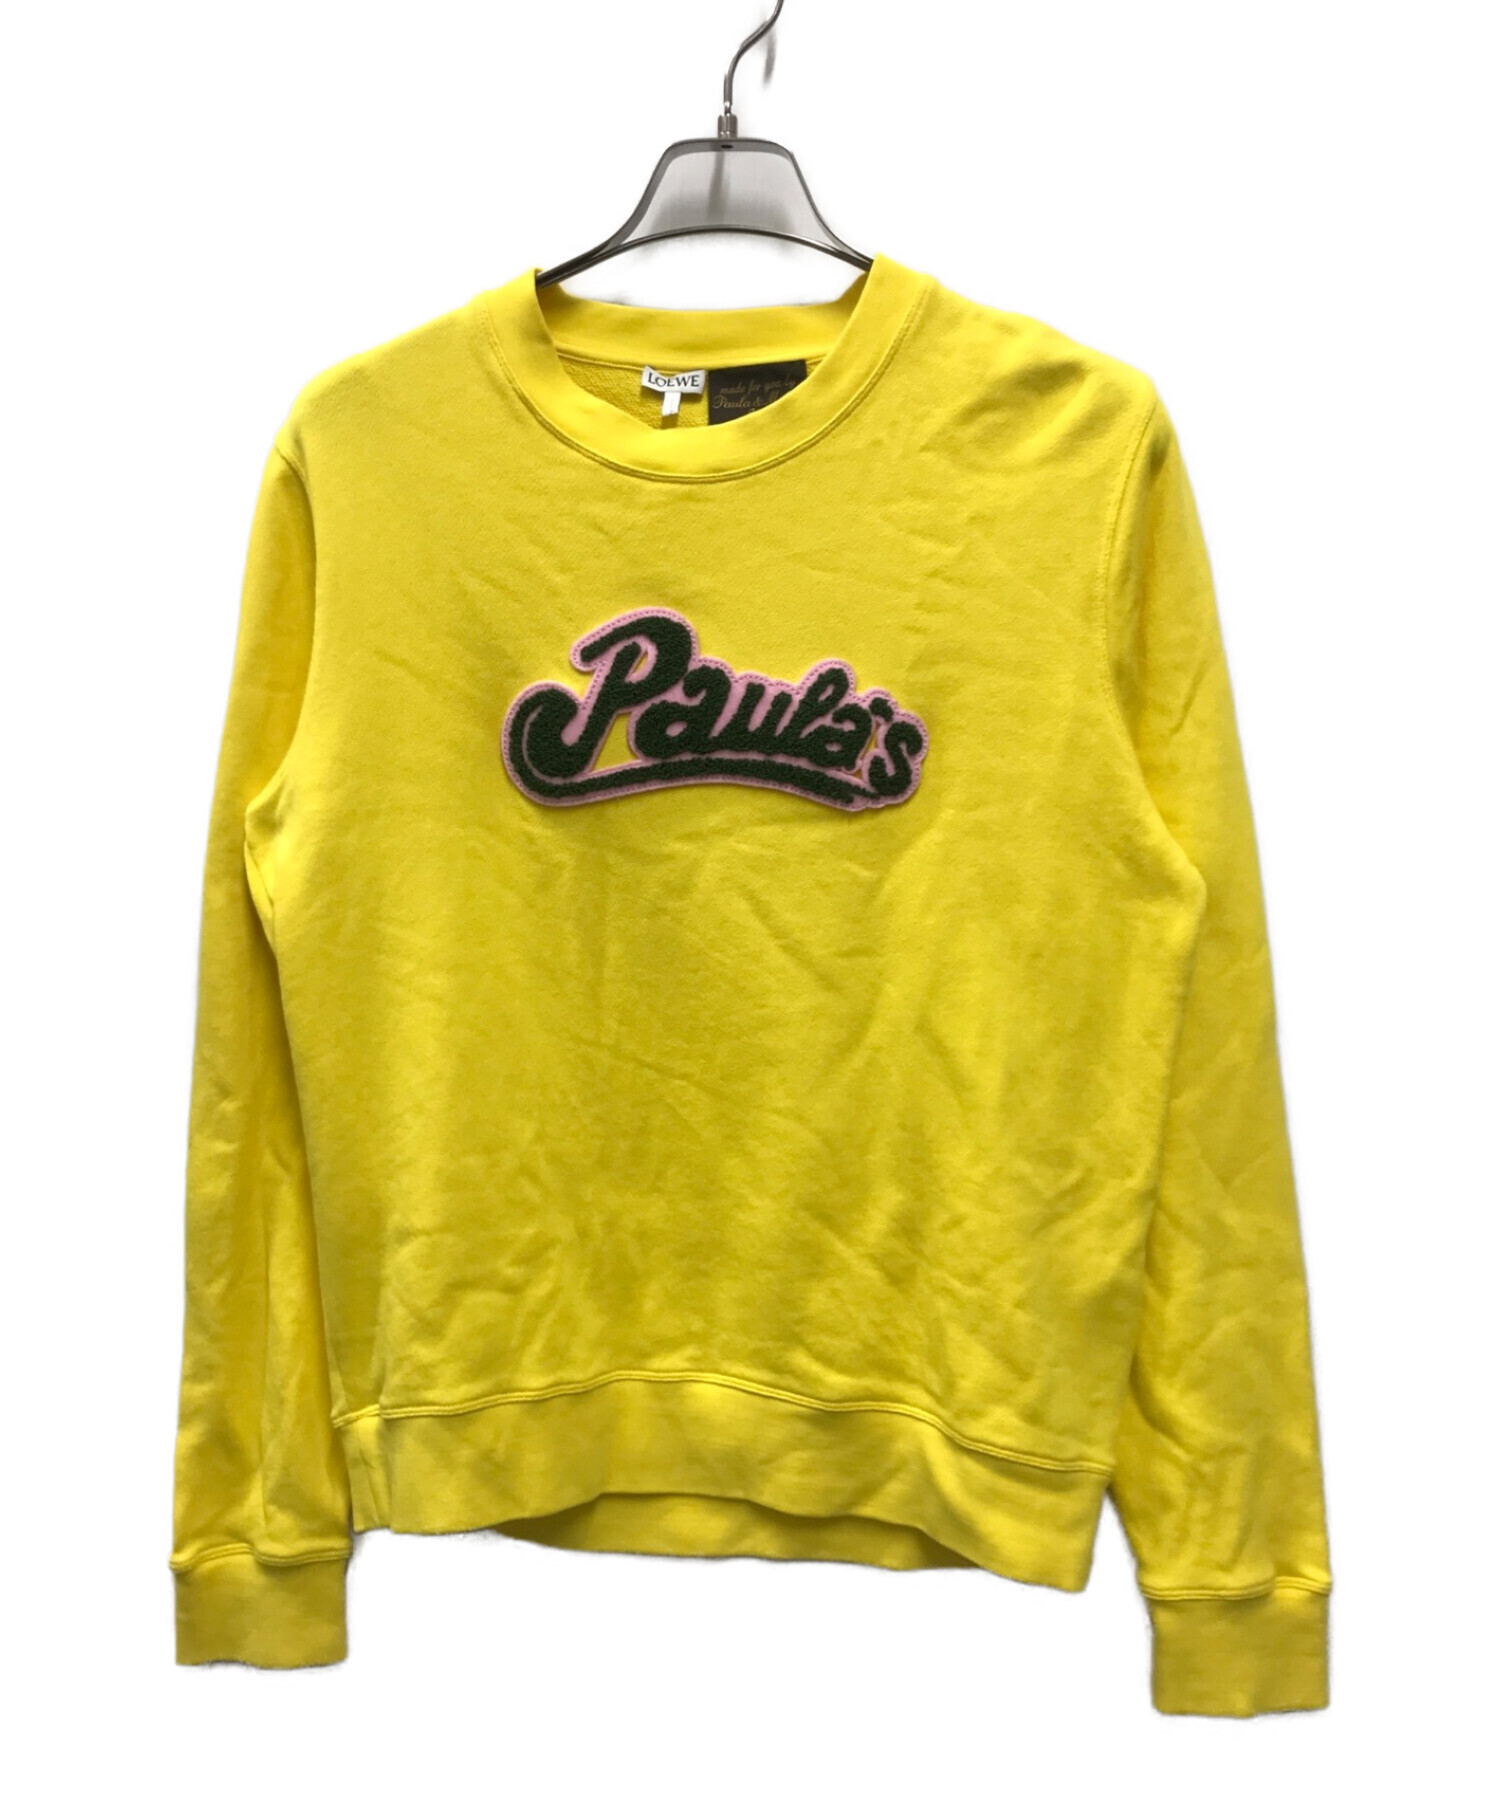 LOEWE (ロエベ) Paula's Ibiza (パウラズ イビザ) Logo-Appliqued Cotton Sweatshirt イエロー  サイズ:S